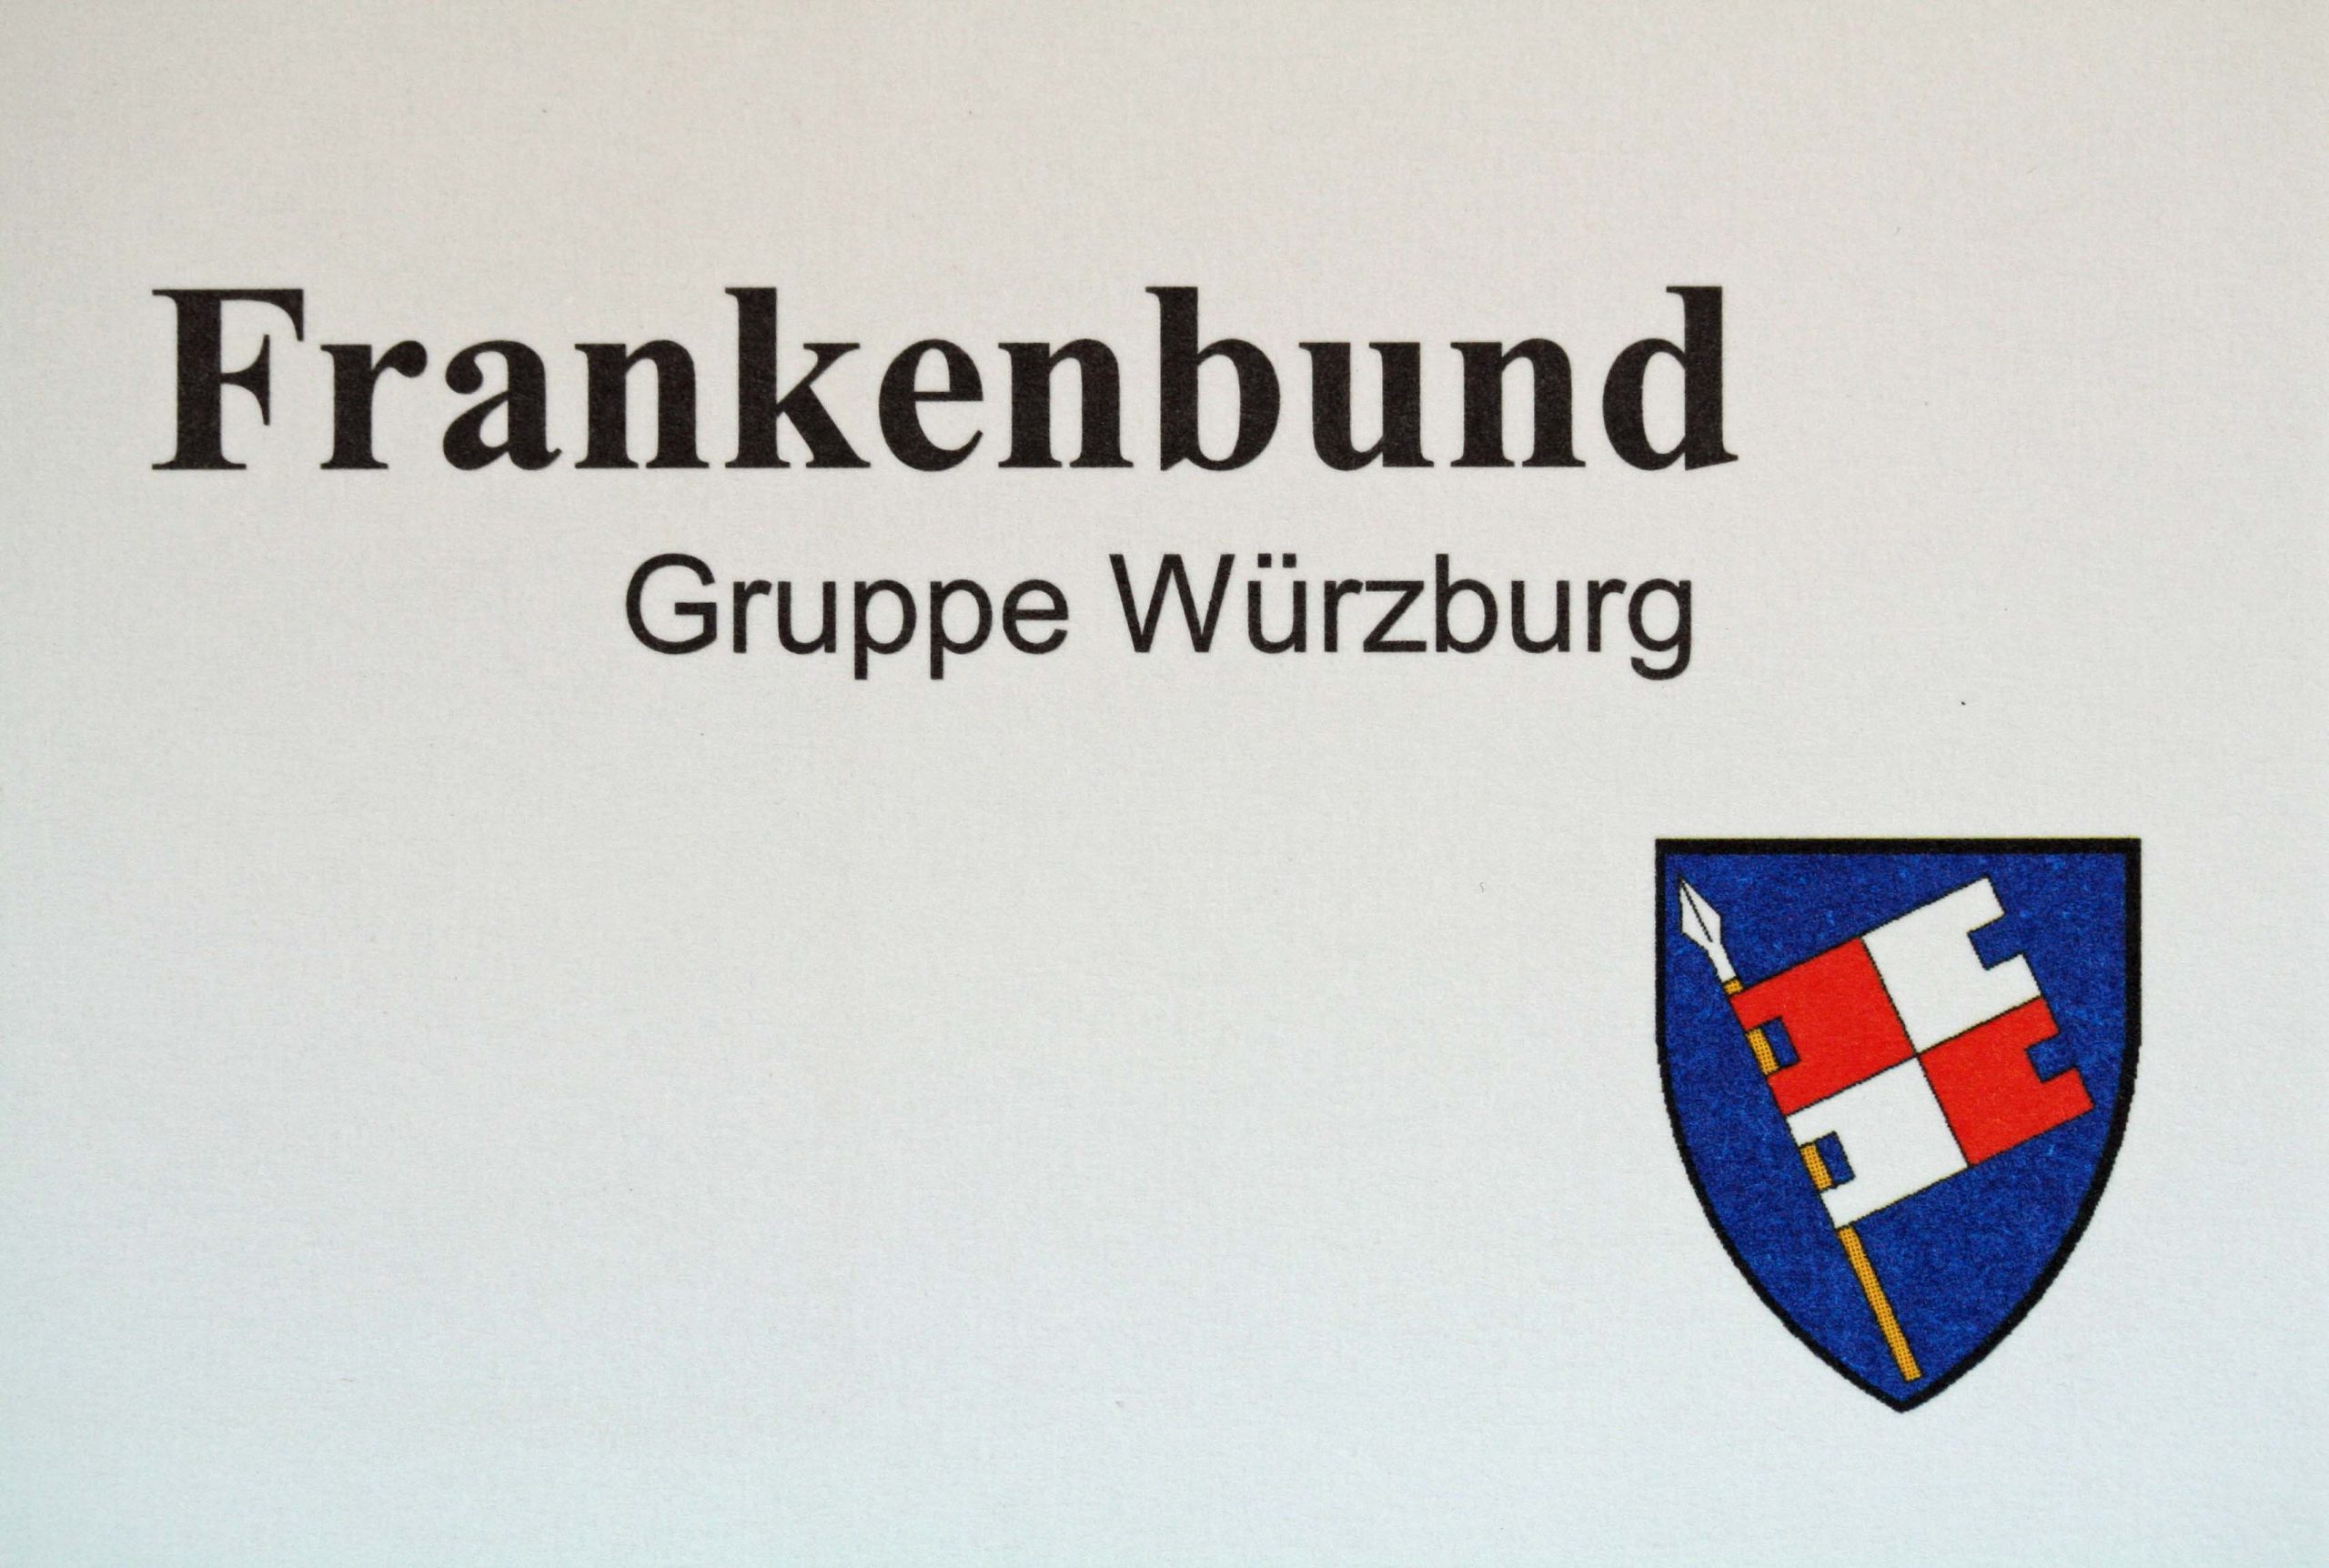 Gruppe Würzburg Frankenbund